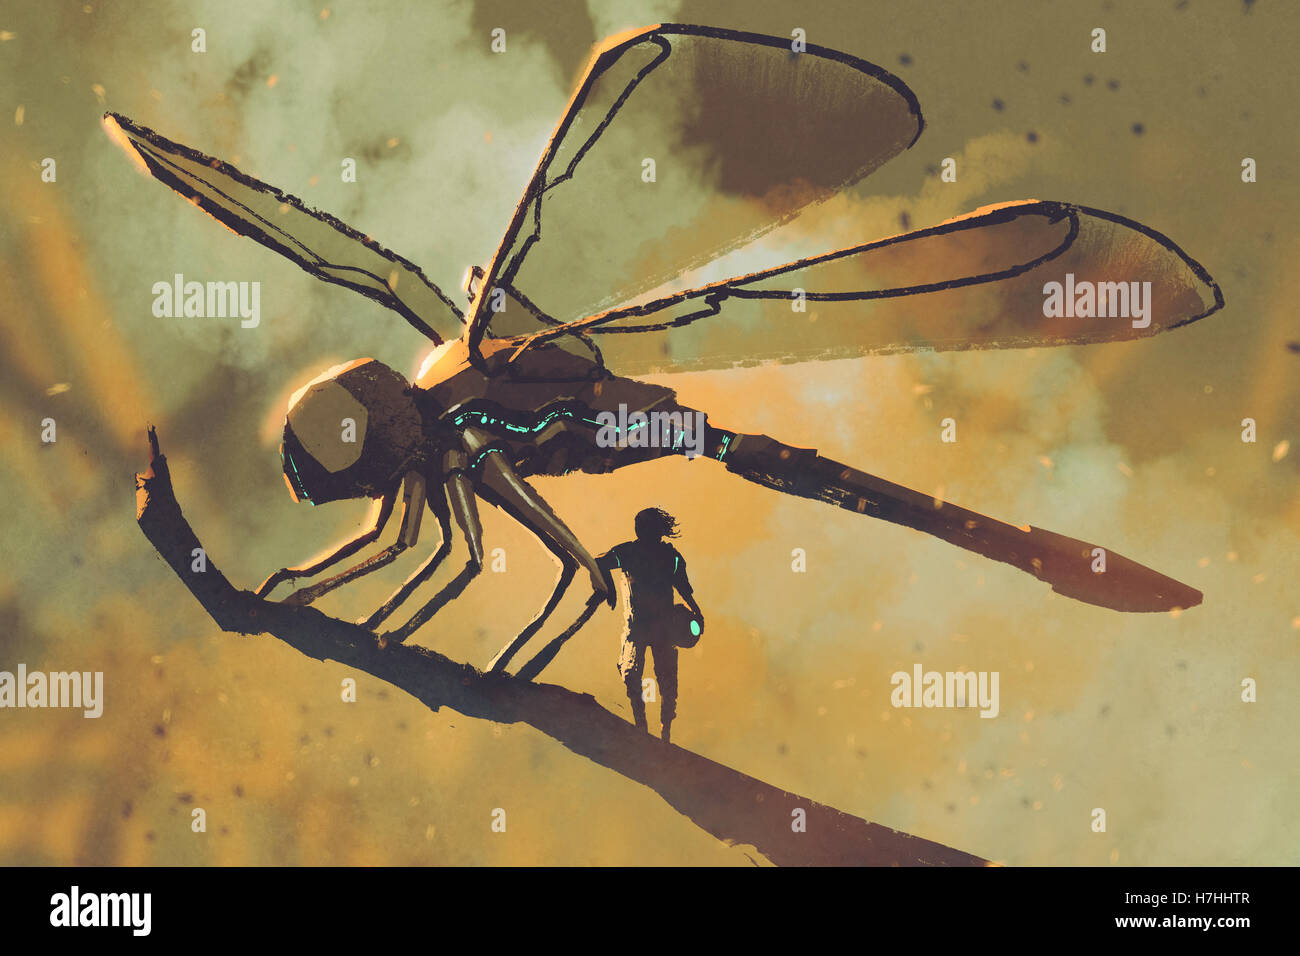 Permanent pilote avec libellule mécanique géant sci-fi,peinture concept illustration Banque D'Images